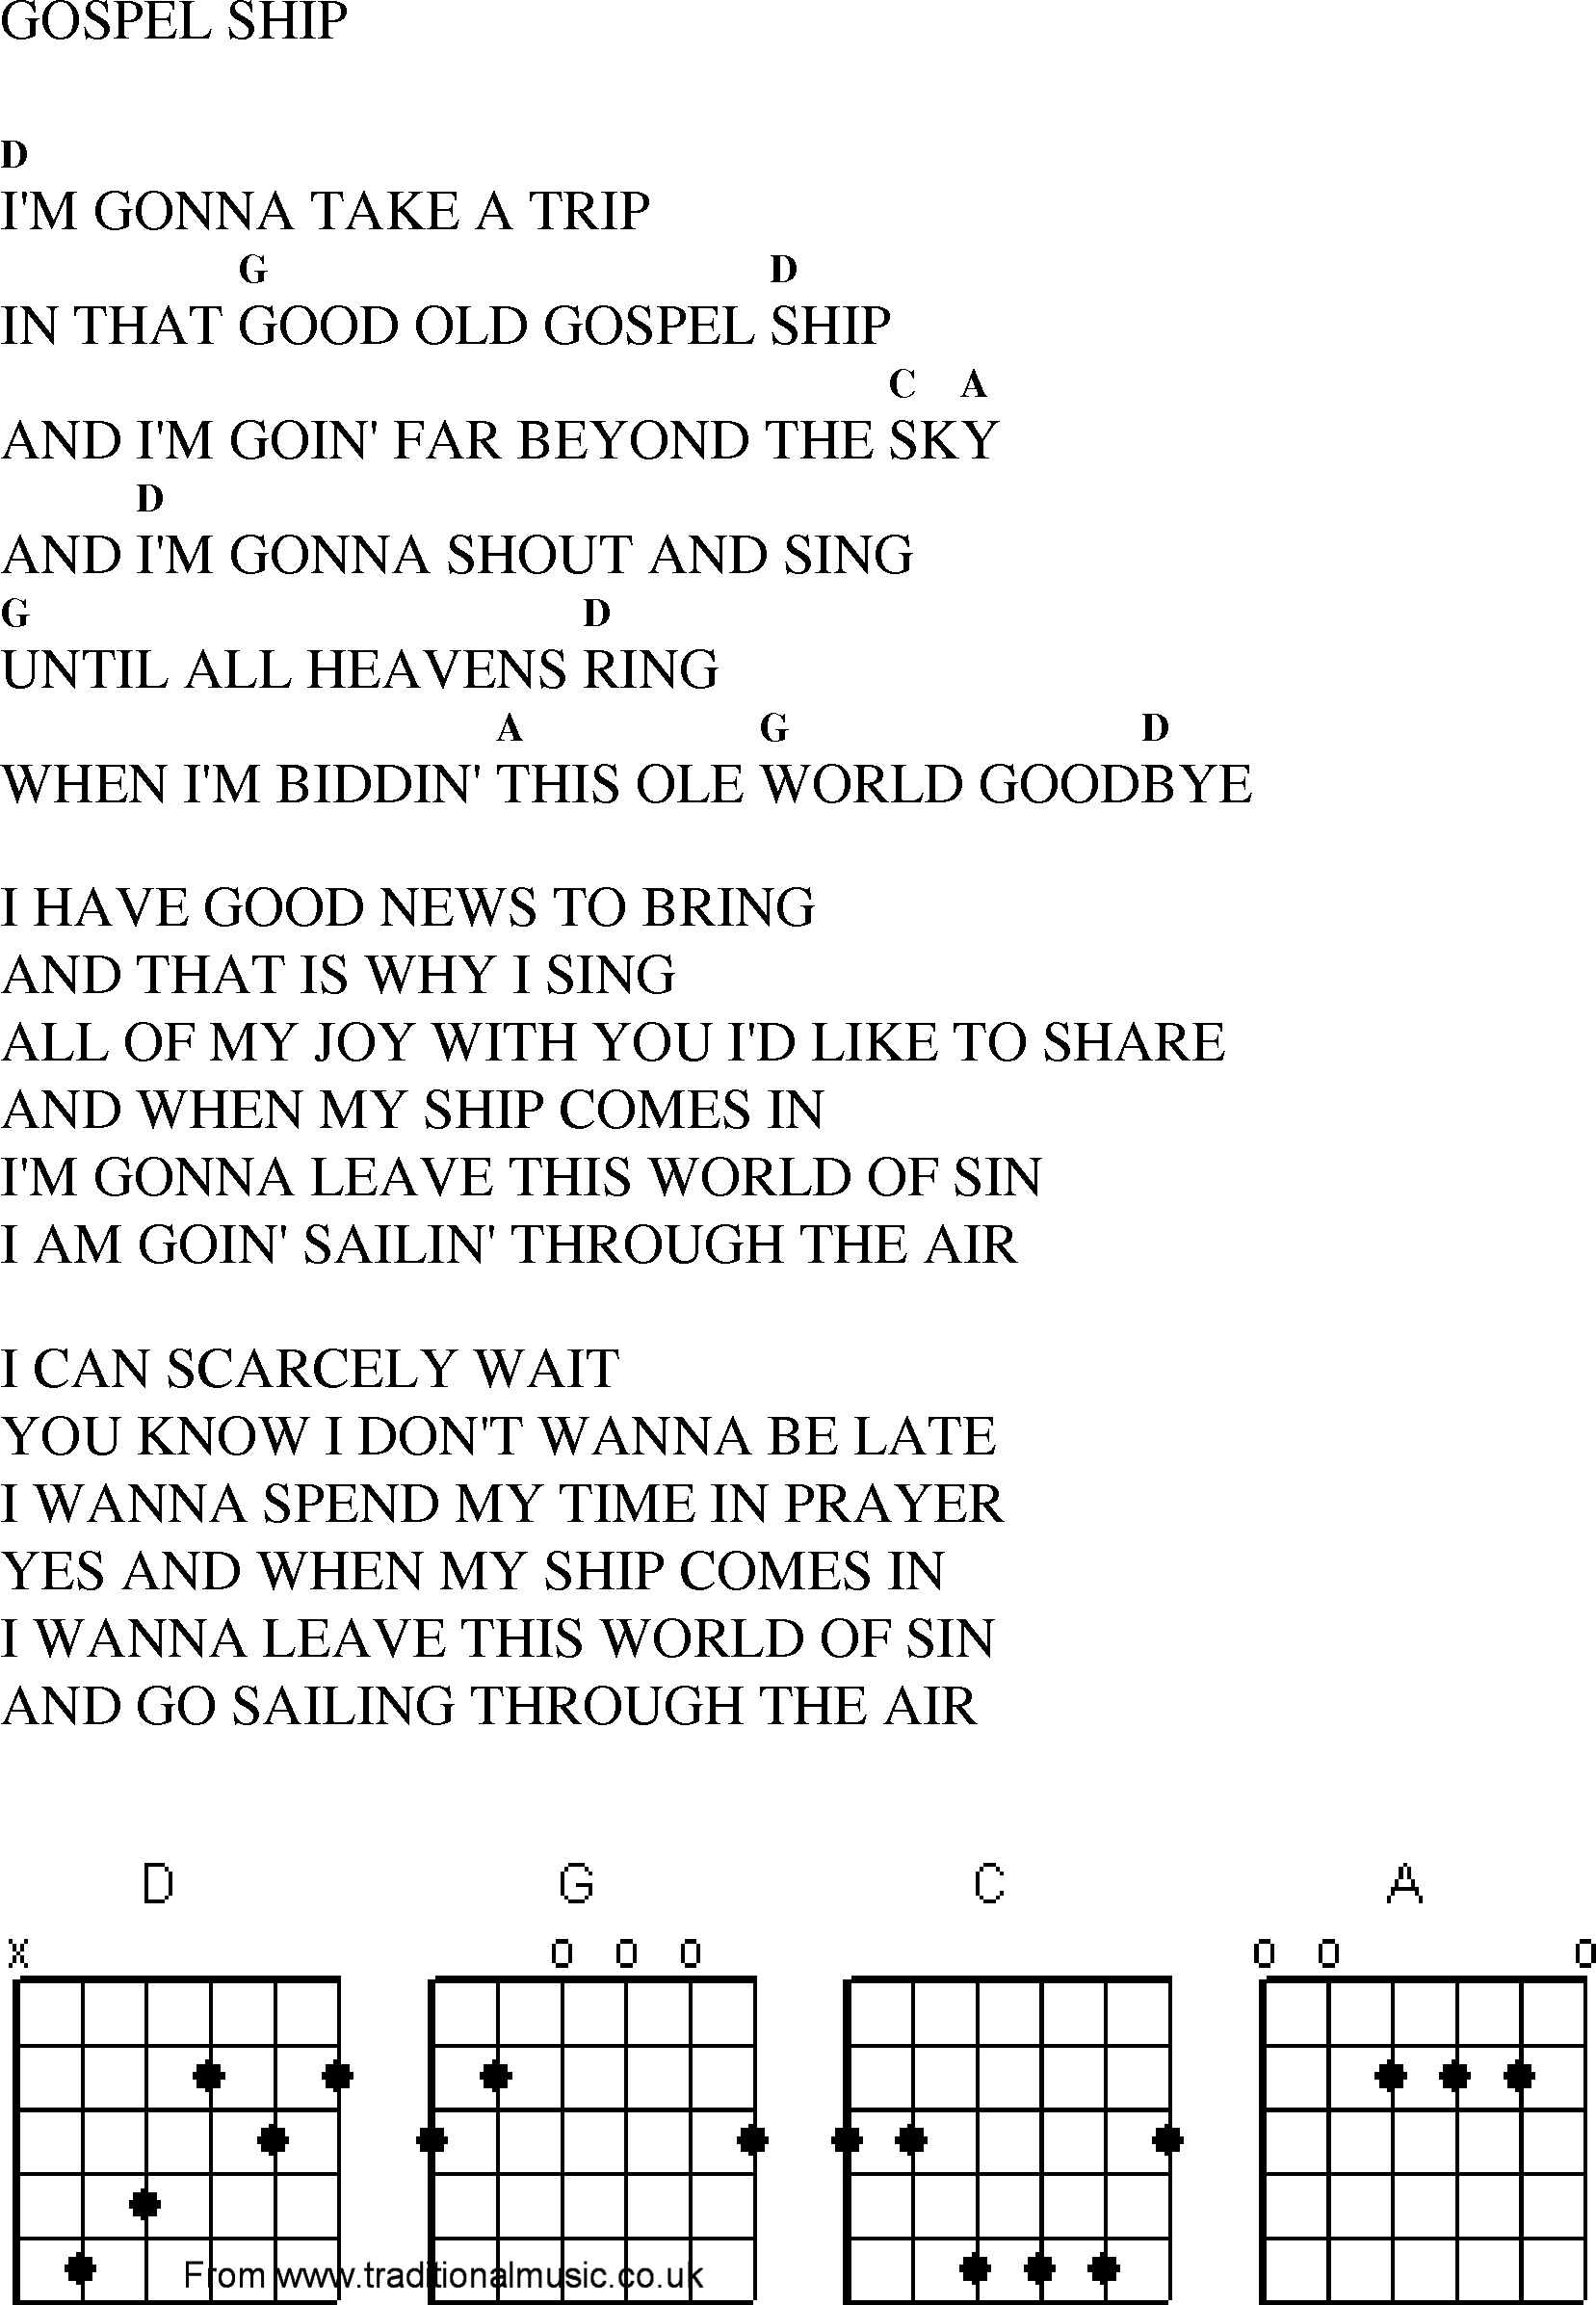 Gospel Song: gospel_ship, lyrics and chords.